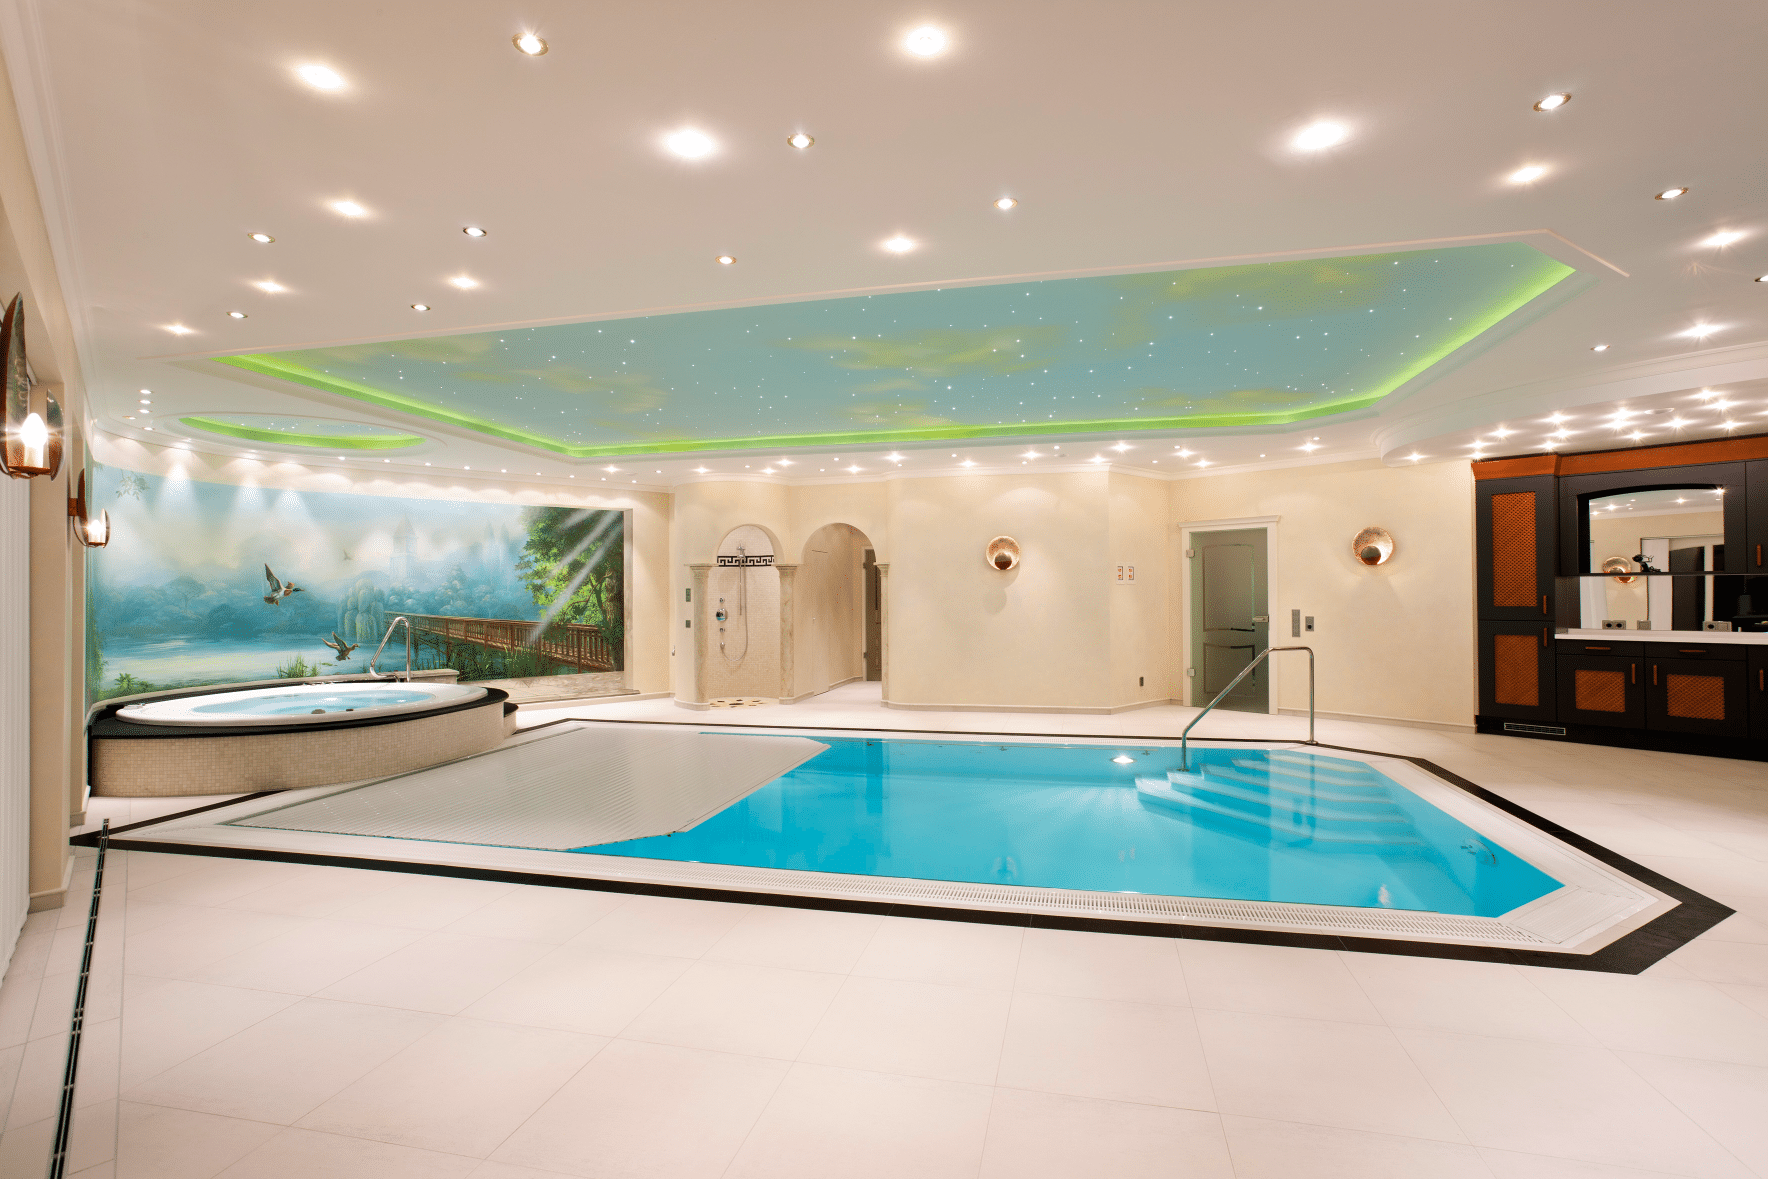 Hallenbad mit kunstvoller Wandmalerei, Dusche, Whirlpool und Indoor-Swimmingpool mit Poolüberdachung der Marke Grando, erhältlich bei Grossmann.